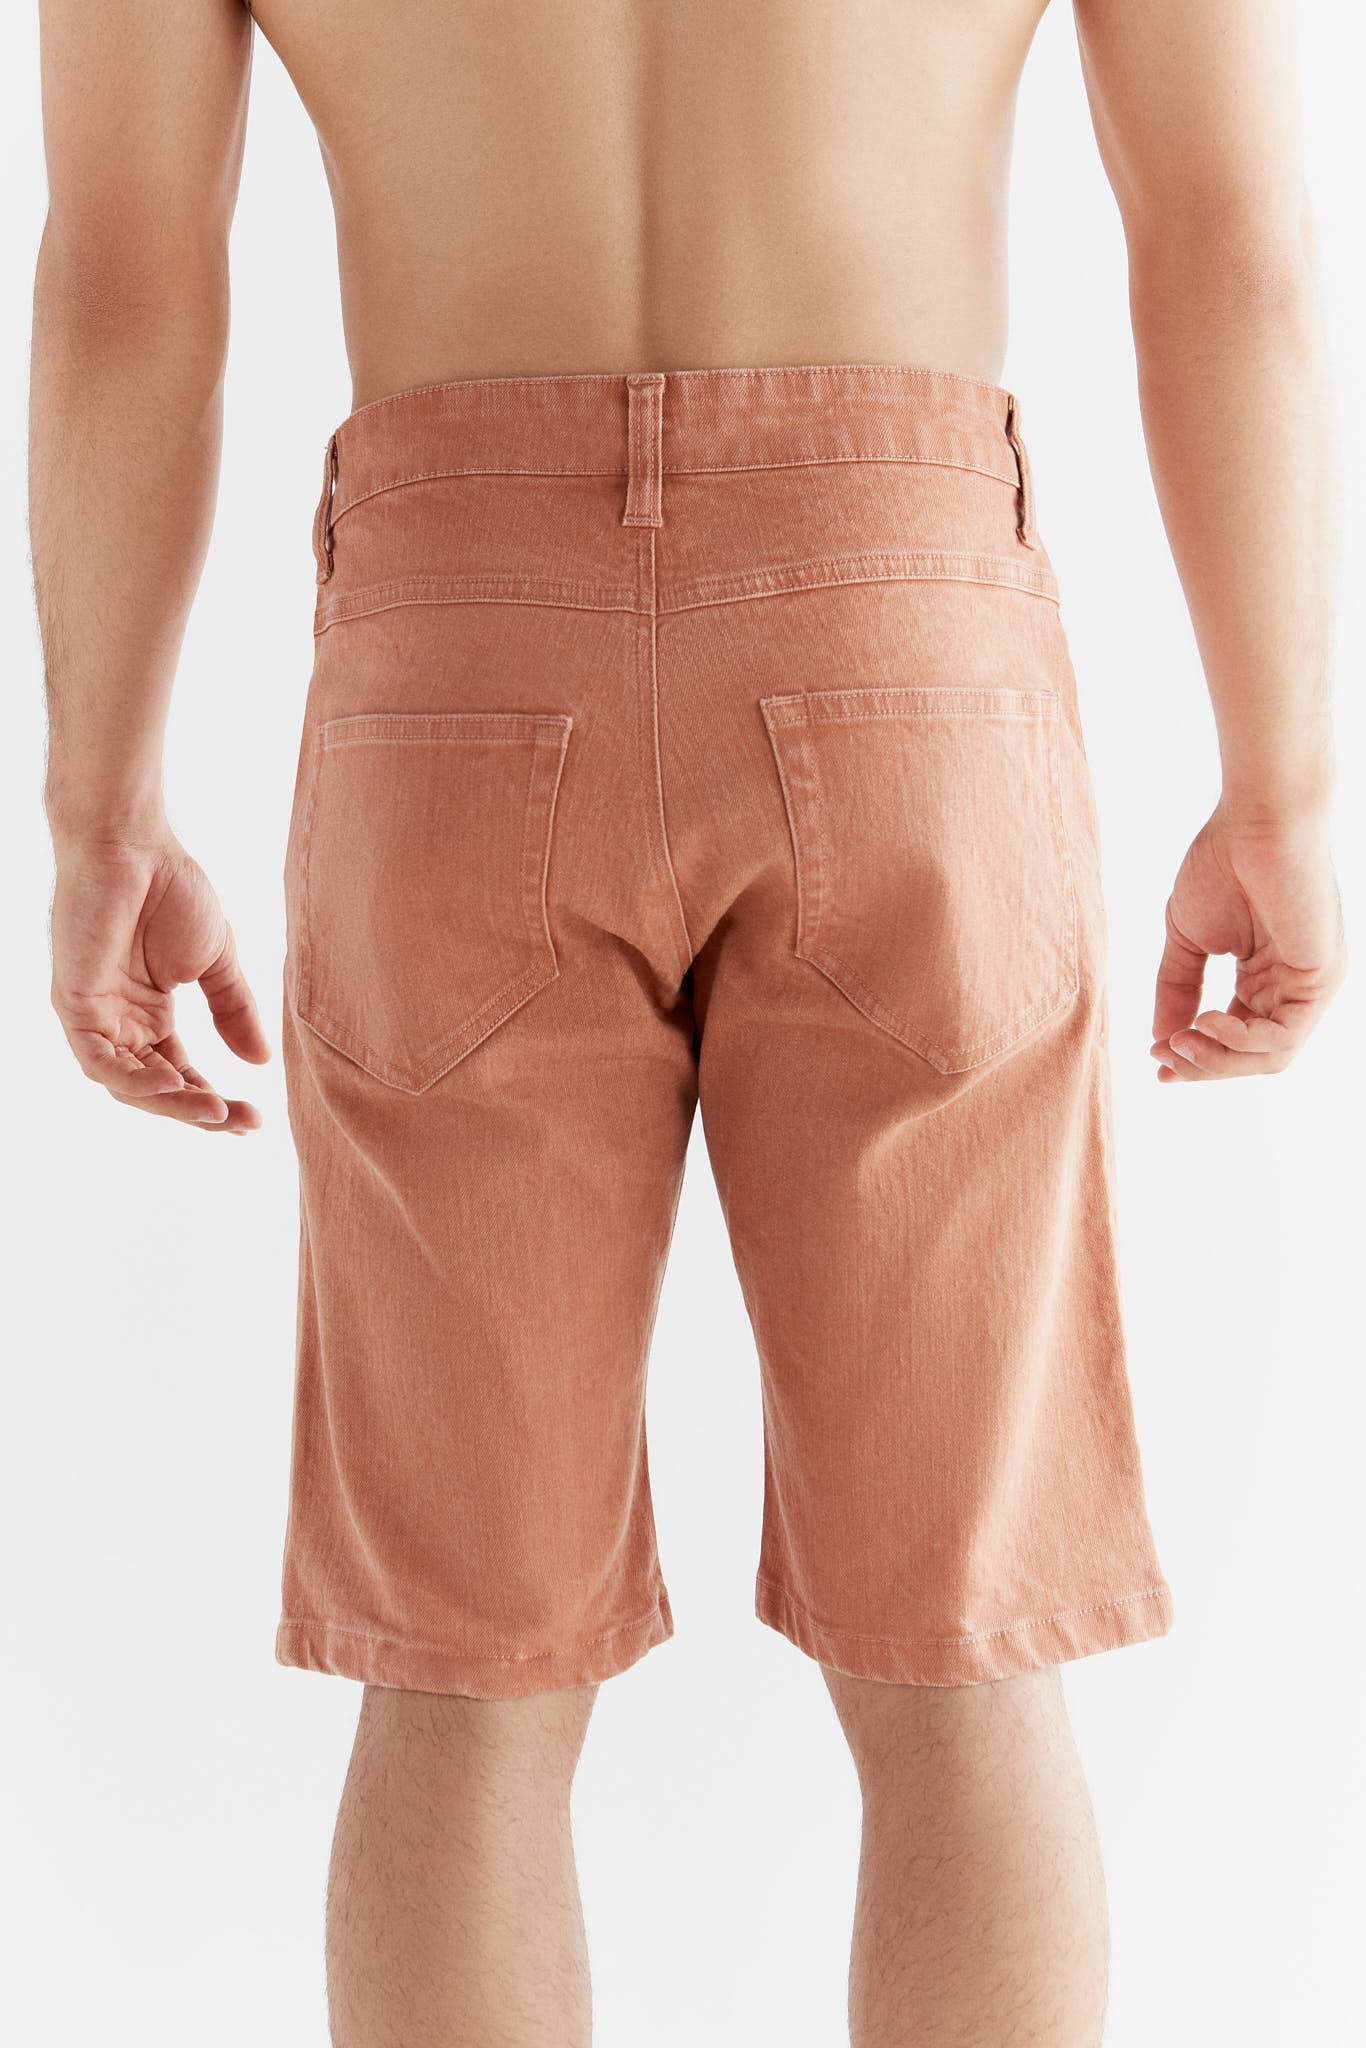 MA3018-514 | Men Denim Shorts in Ton Waschung - Sunburn